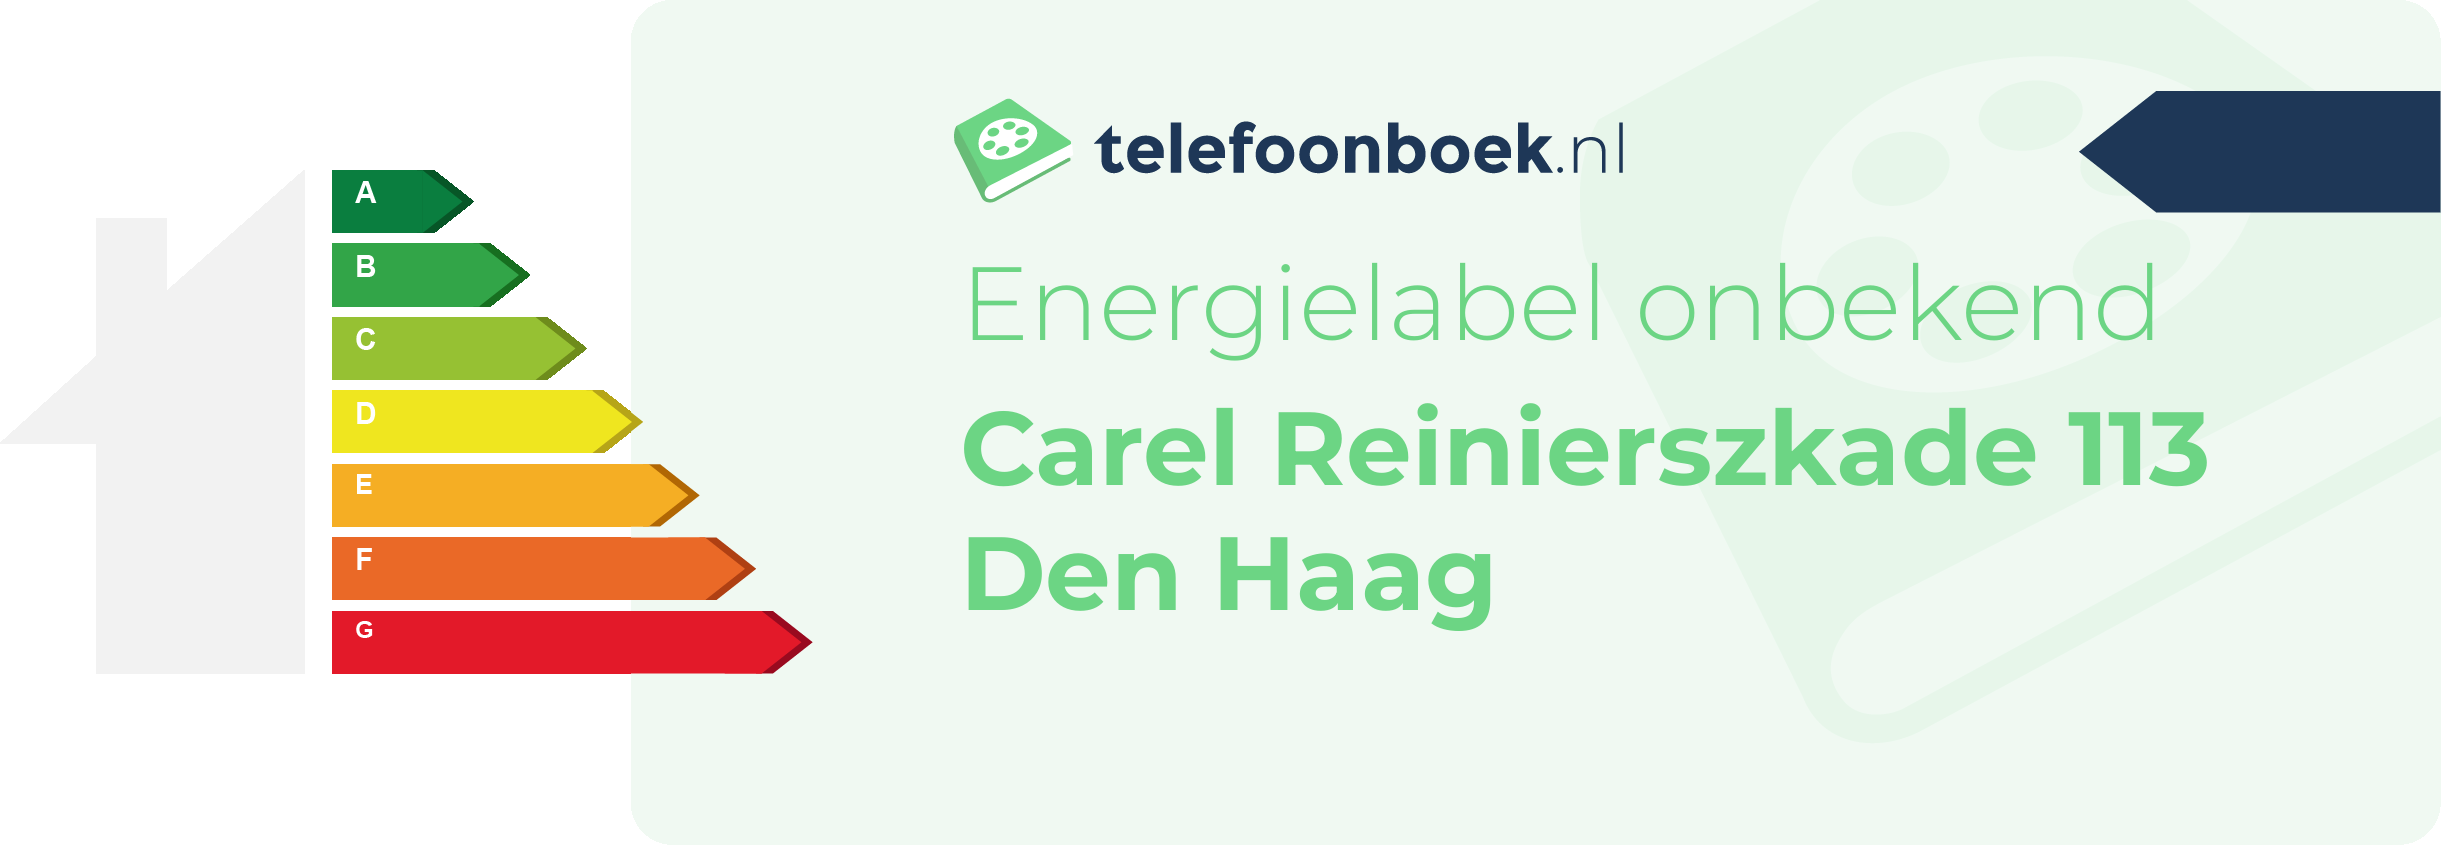 Energielabel Carel Reinierszkade 113 Den Haag